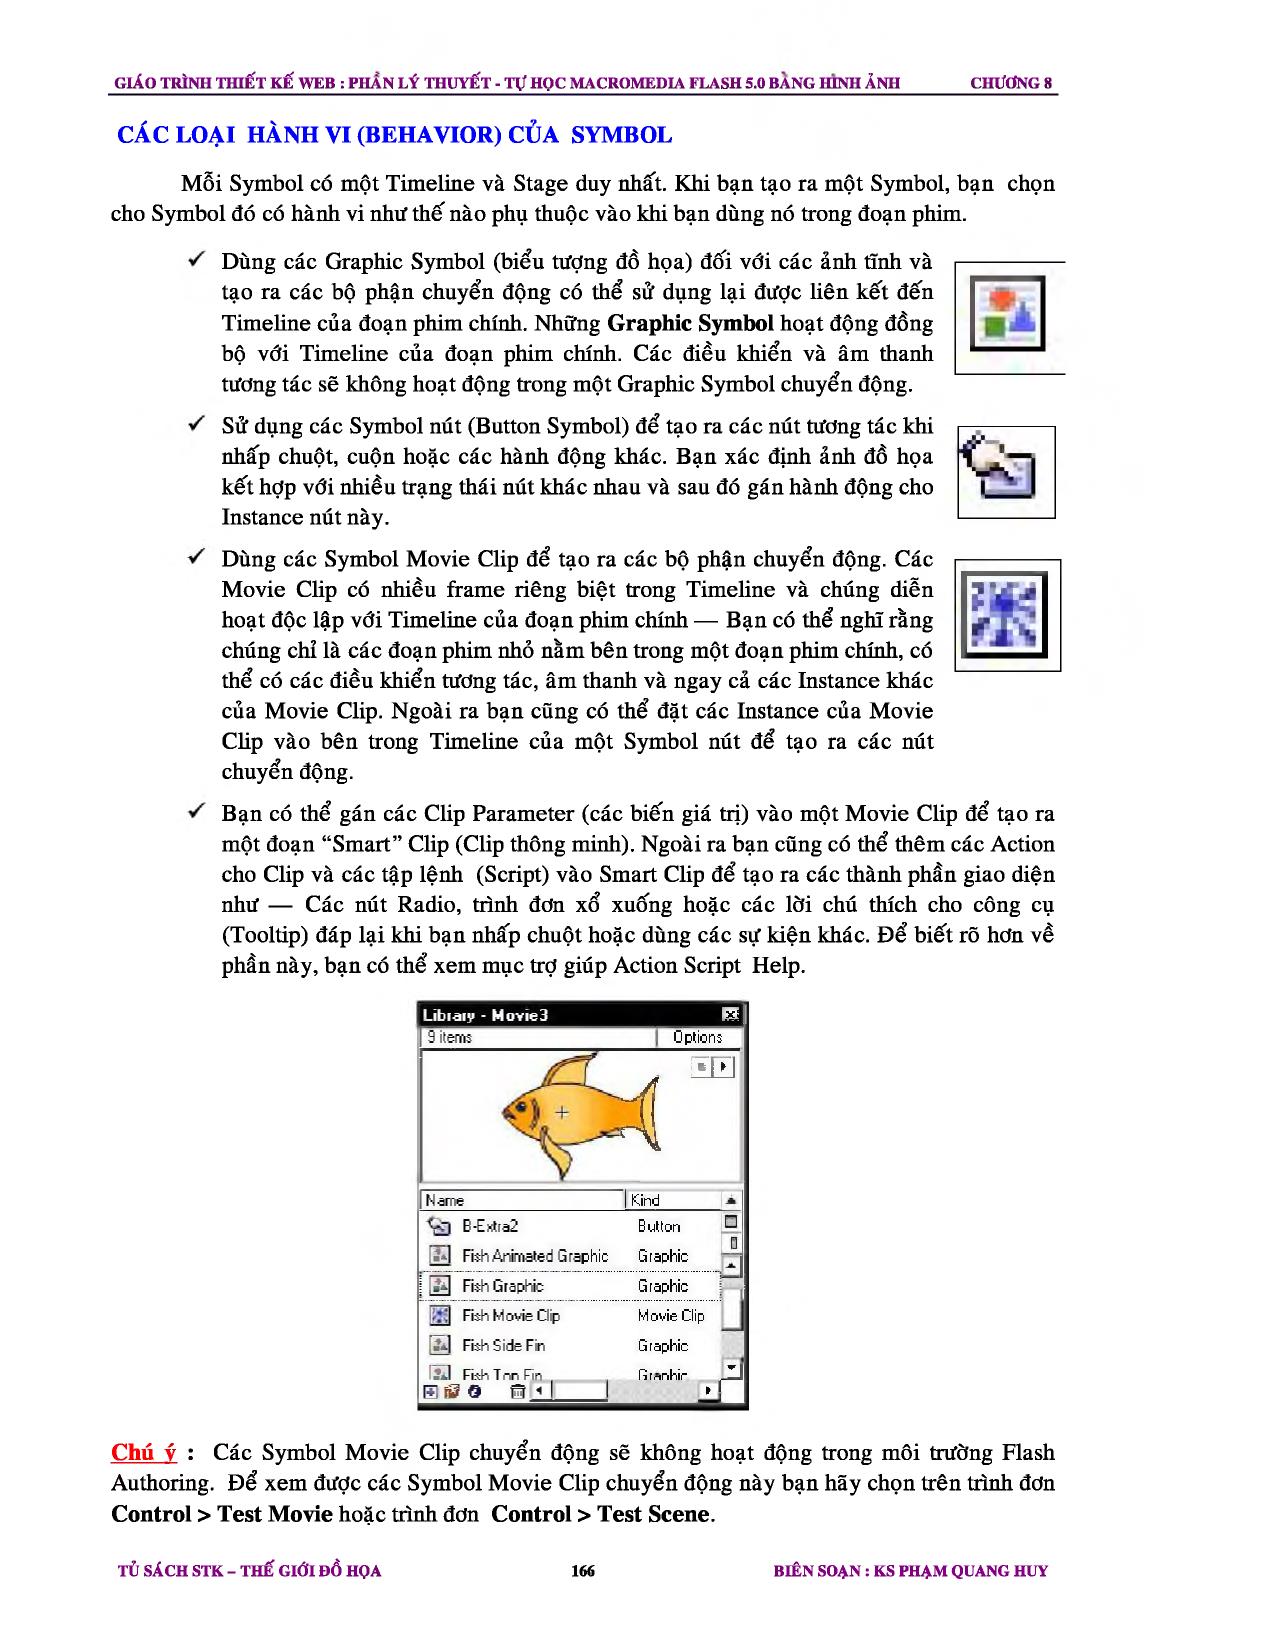 Giáo trình Thiết kế Web - Chương 8: Cách dùng các Symbol và Instance trang 2